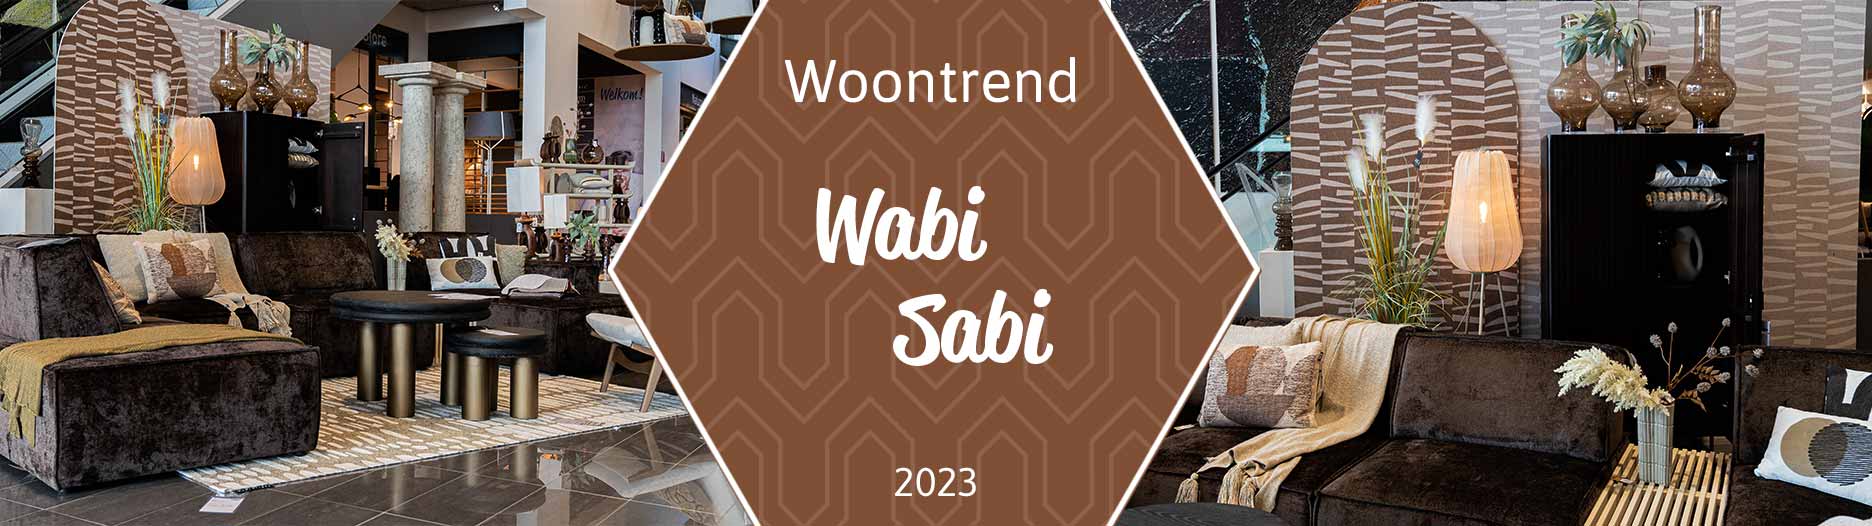 Woontrend Wabi Sabi bij Home Center